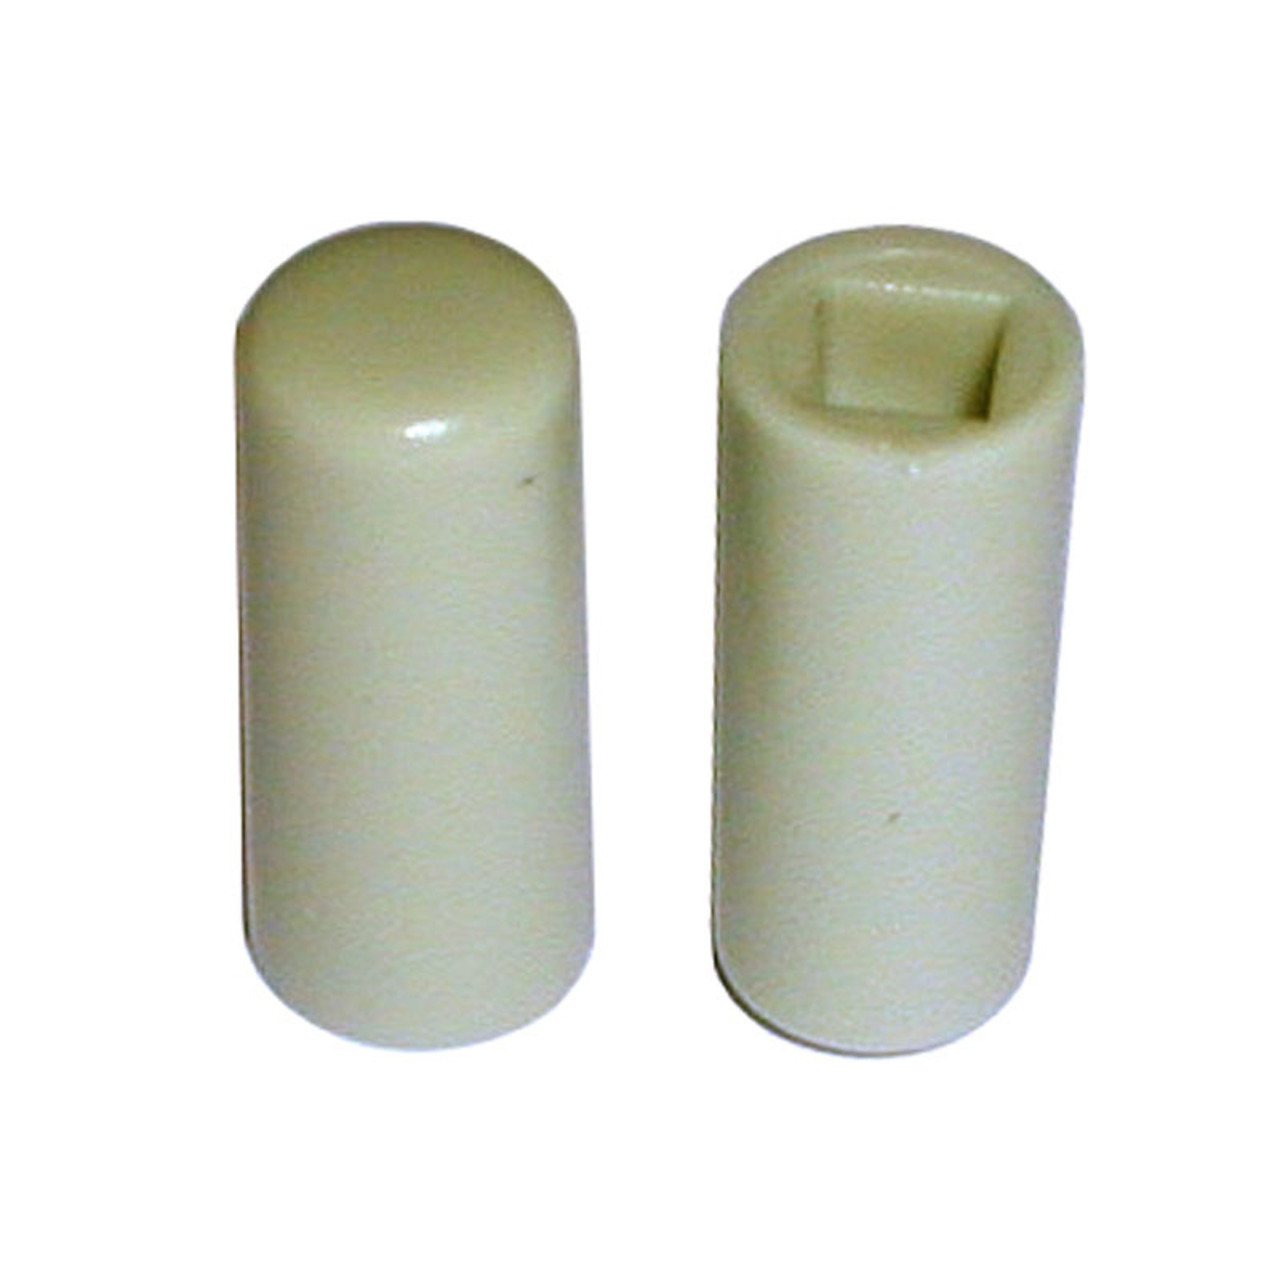 Tastknopf- grau- 18 x 7-7 mm Durchmesser